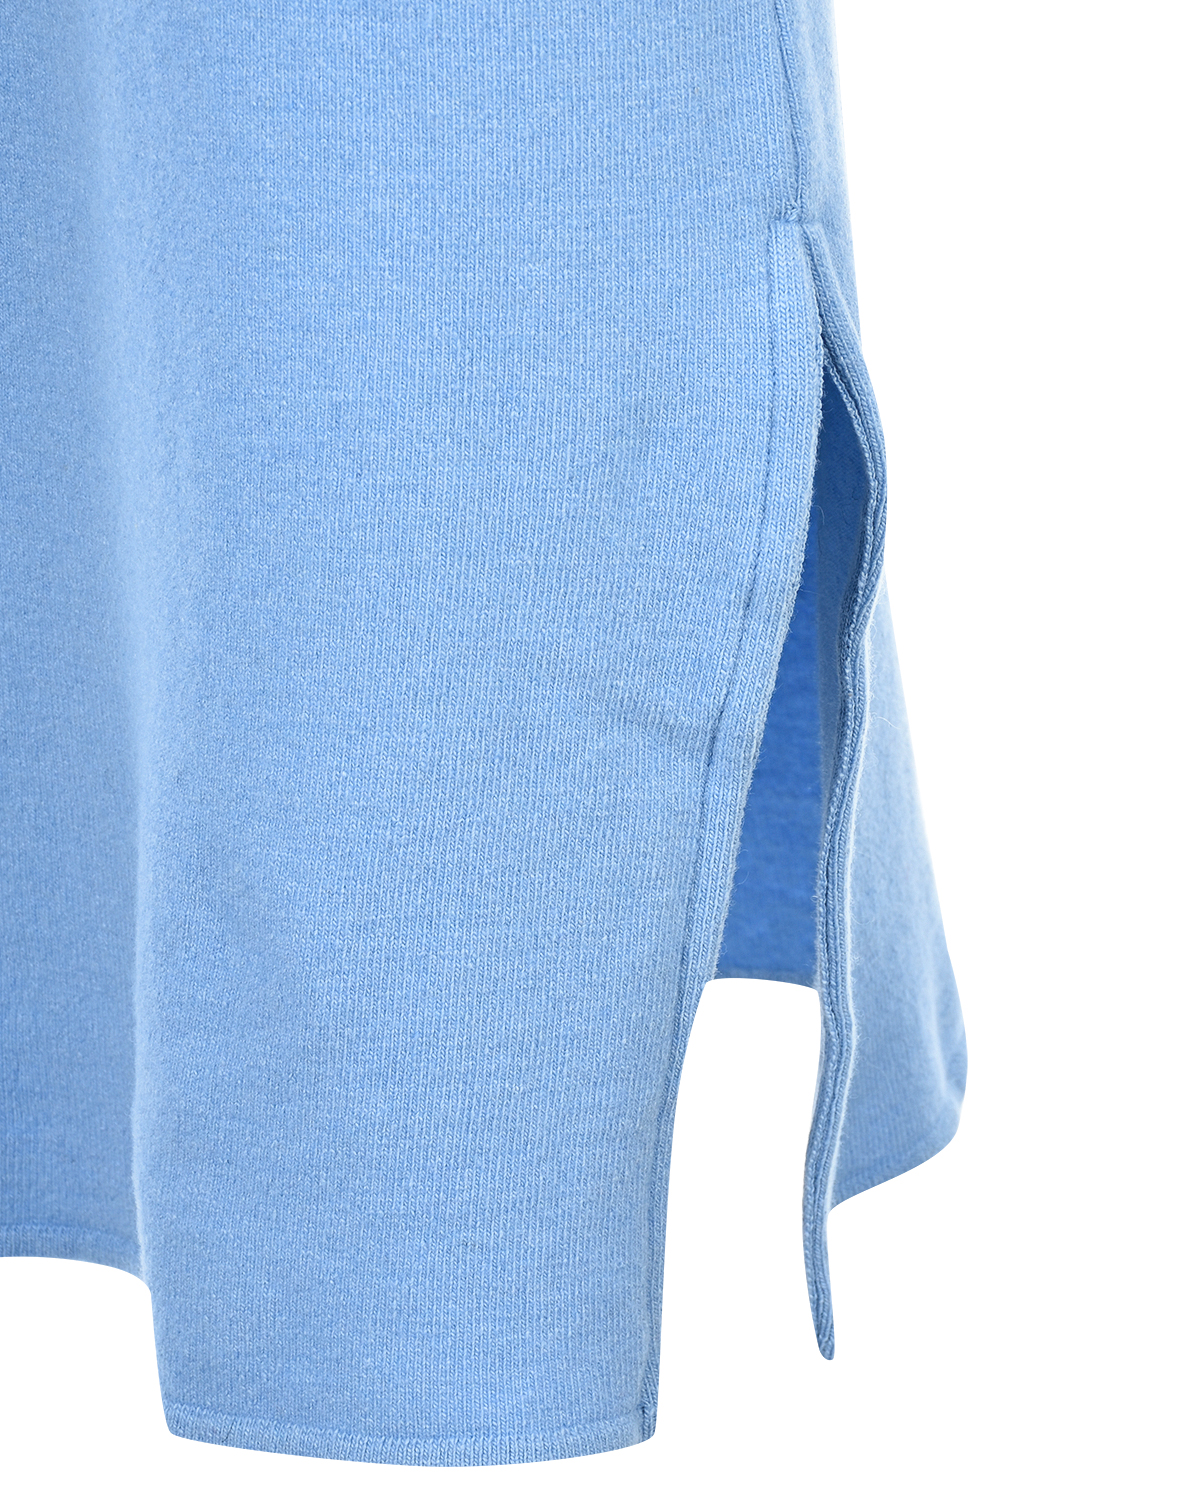 Голубая юбка-миди для беременных Gardena Pietro Brunelli, размер 42, цвет голубой - фото 6